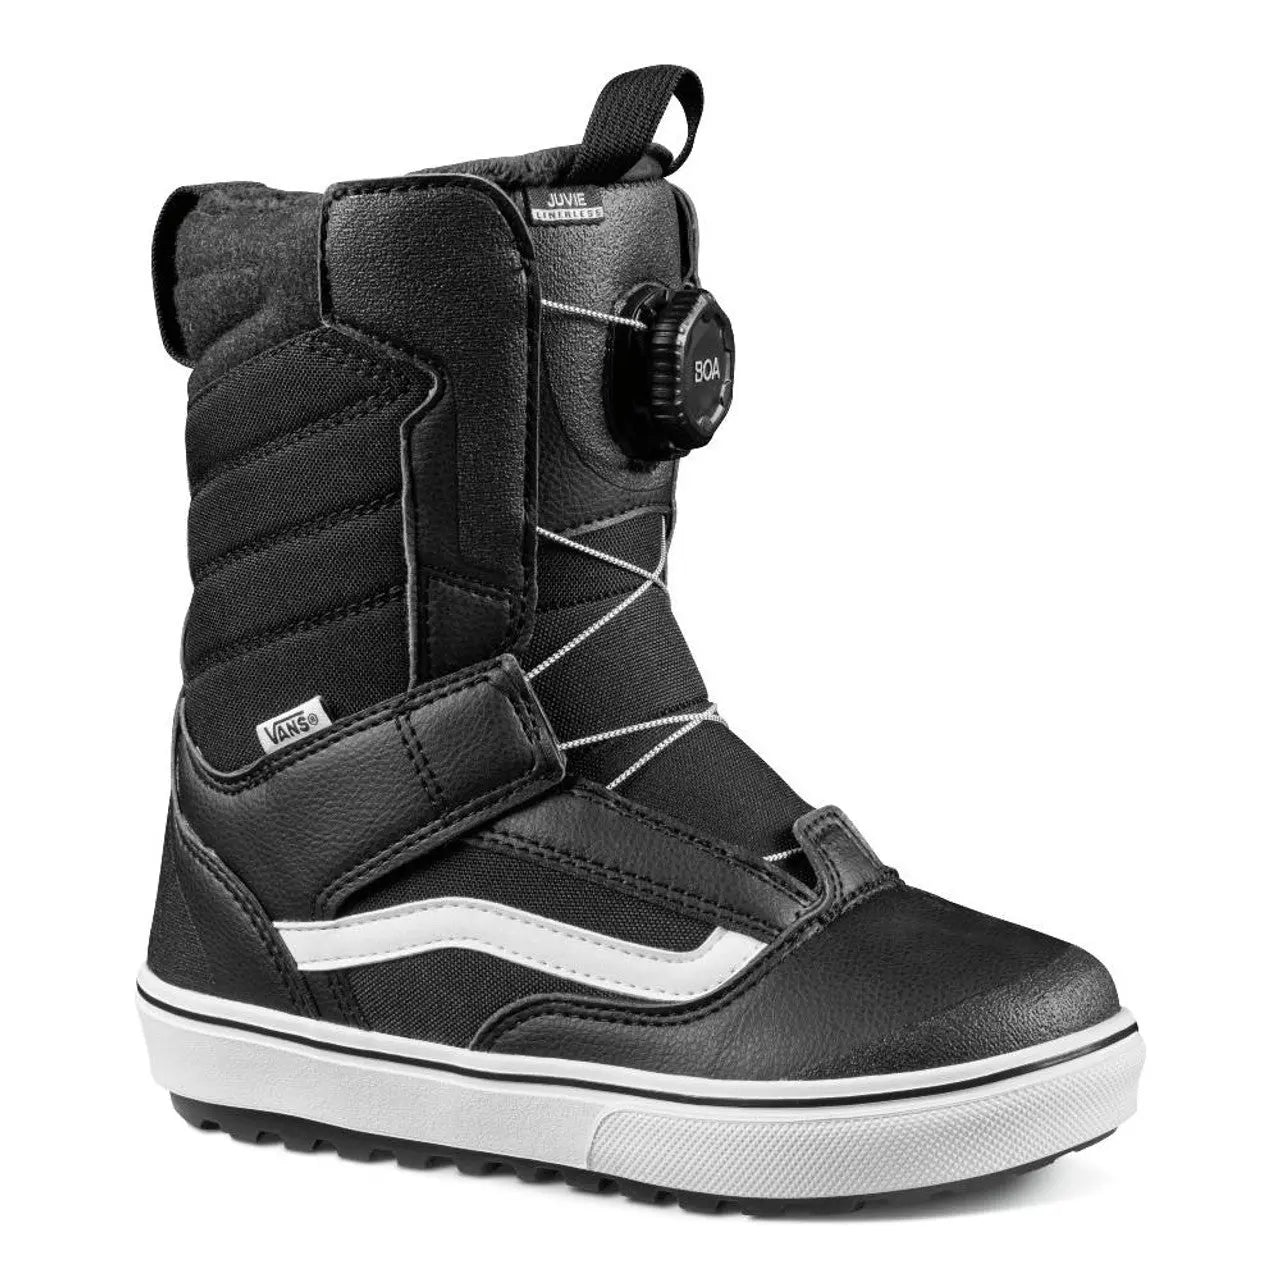 Kids Snowboard Boots – Boardomshop